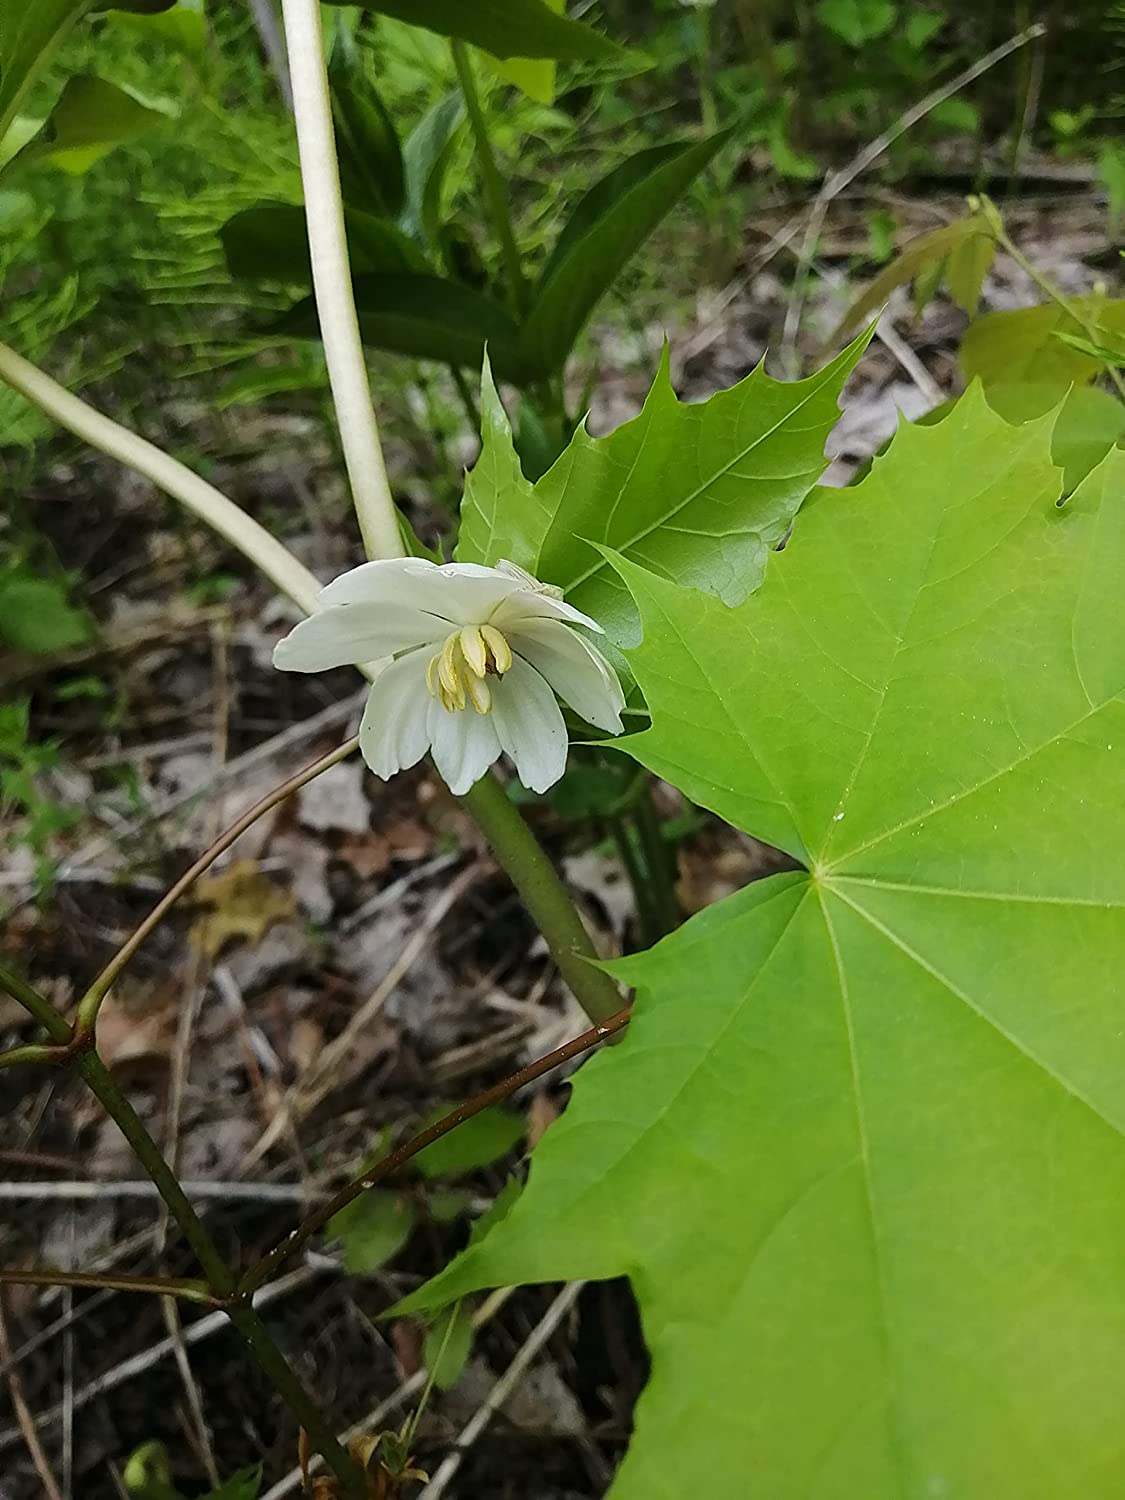 Hundredfold Mayapple 5 Seeds - Podophyllum peltatum Canada Woodland Native Wildflower, Groundcover for Shaded Areas